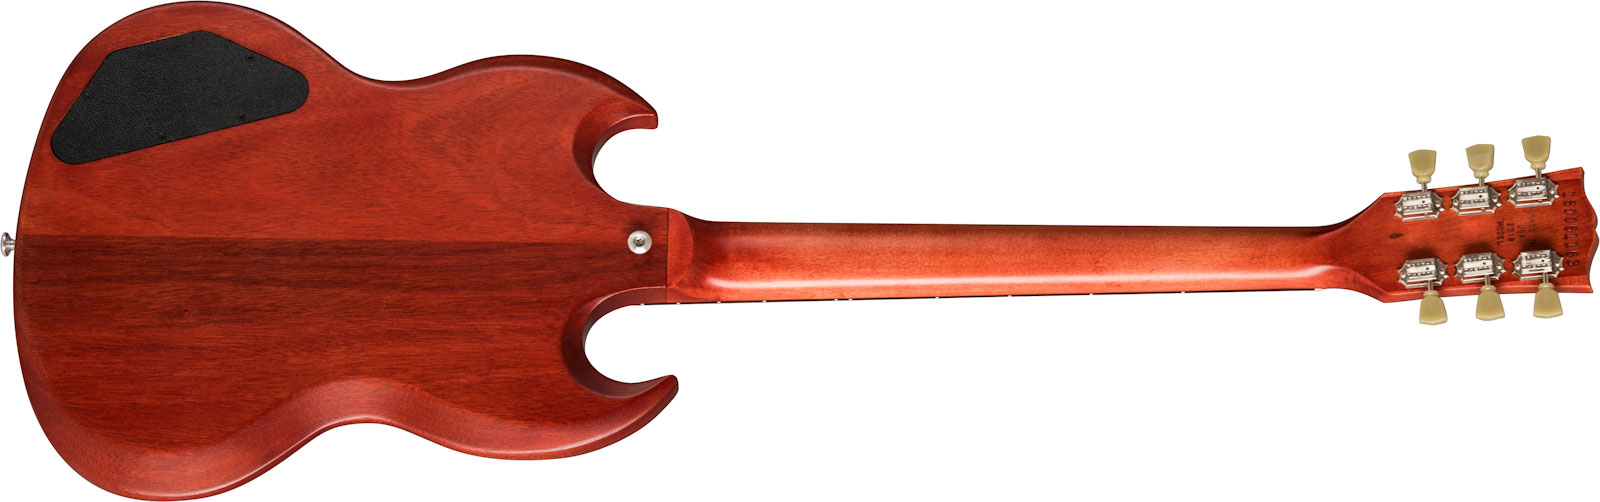 Gibson Sg Tribute Lh Modern Gaucher 2h Ht Rw - Vintage Cherry Satin - Guitarra electrica para zurdos - Variation 1